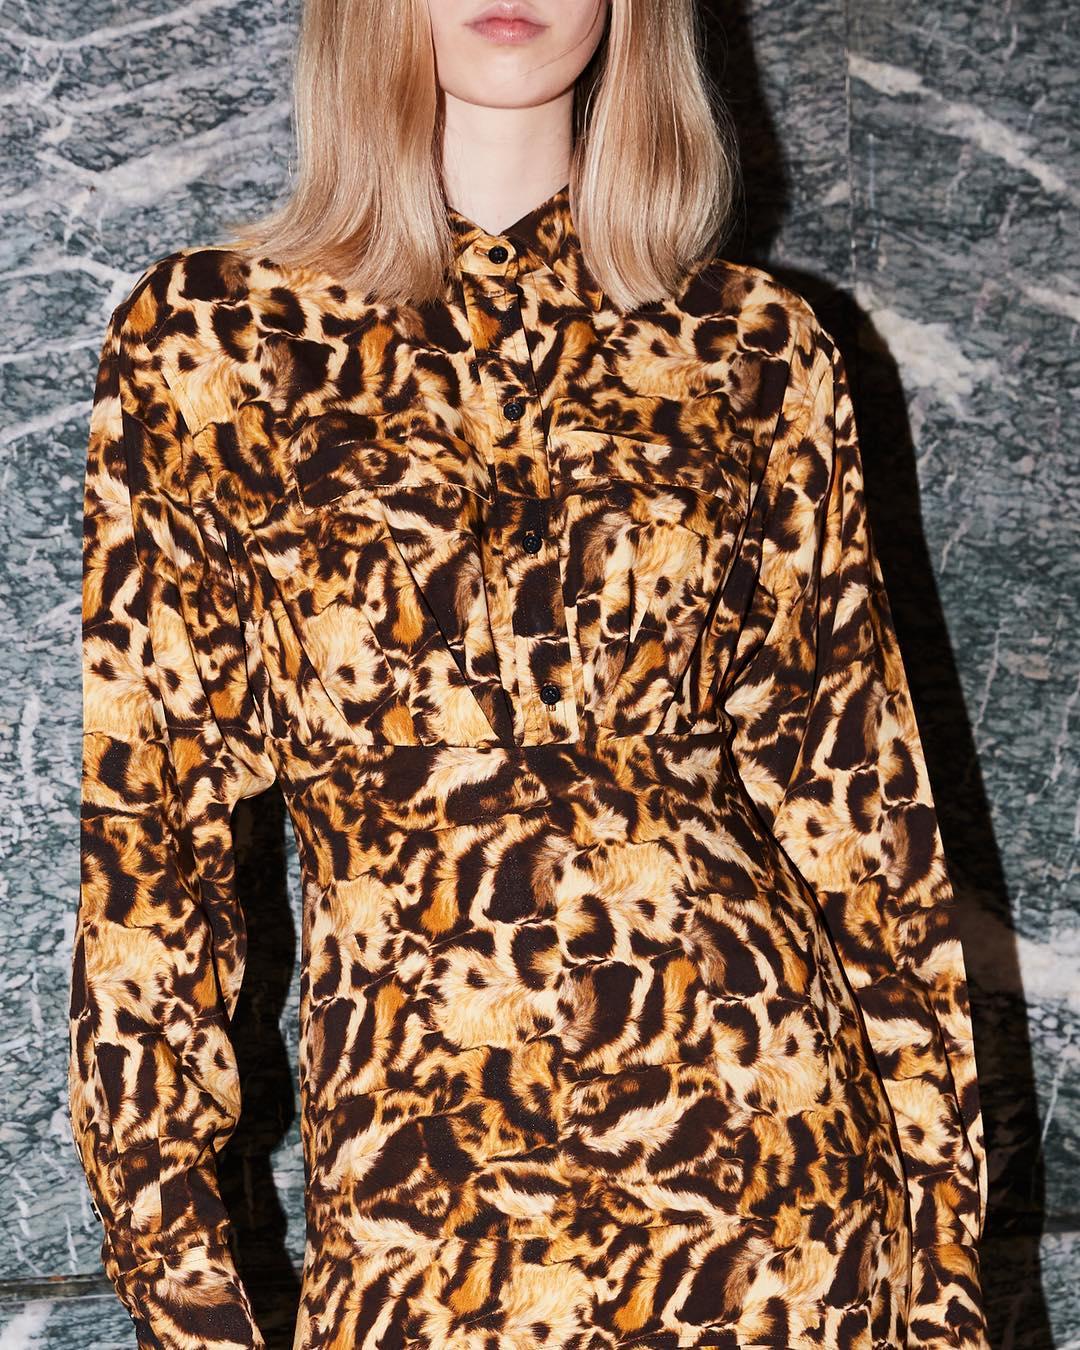 Виктория Бекхэм возвращает моду на леопард. Не поверите, но выглядит это очень стильно!